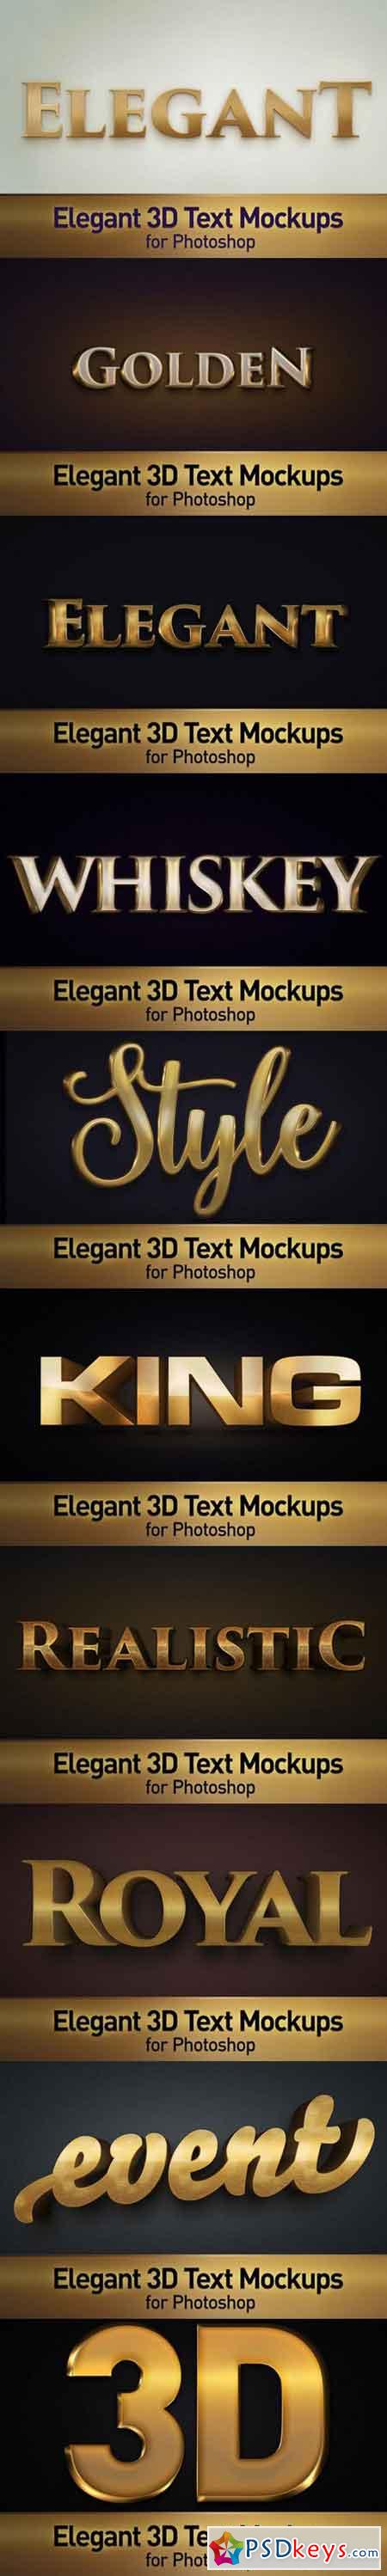 Elegant 3D Text Photoshop Mockups 981708